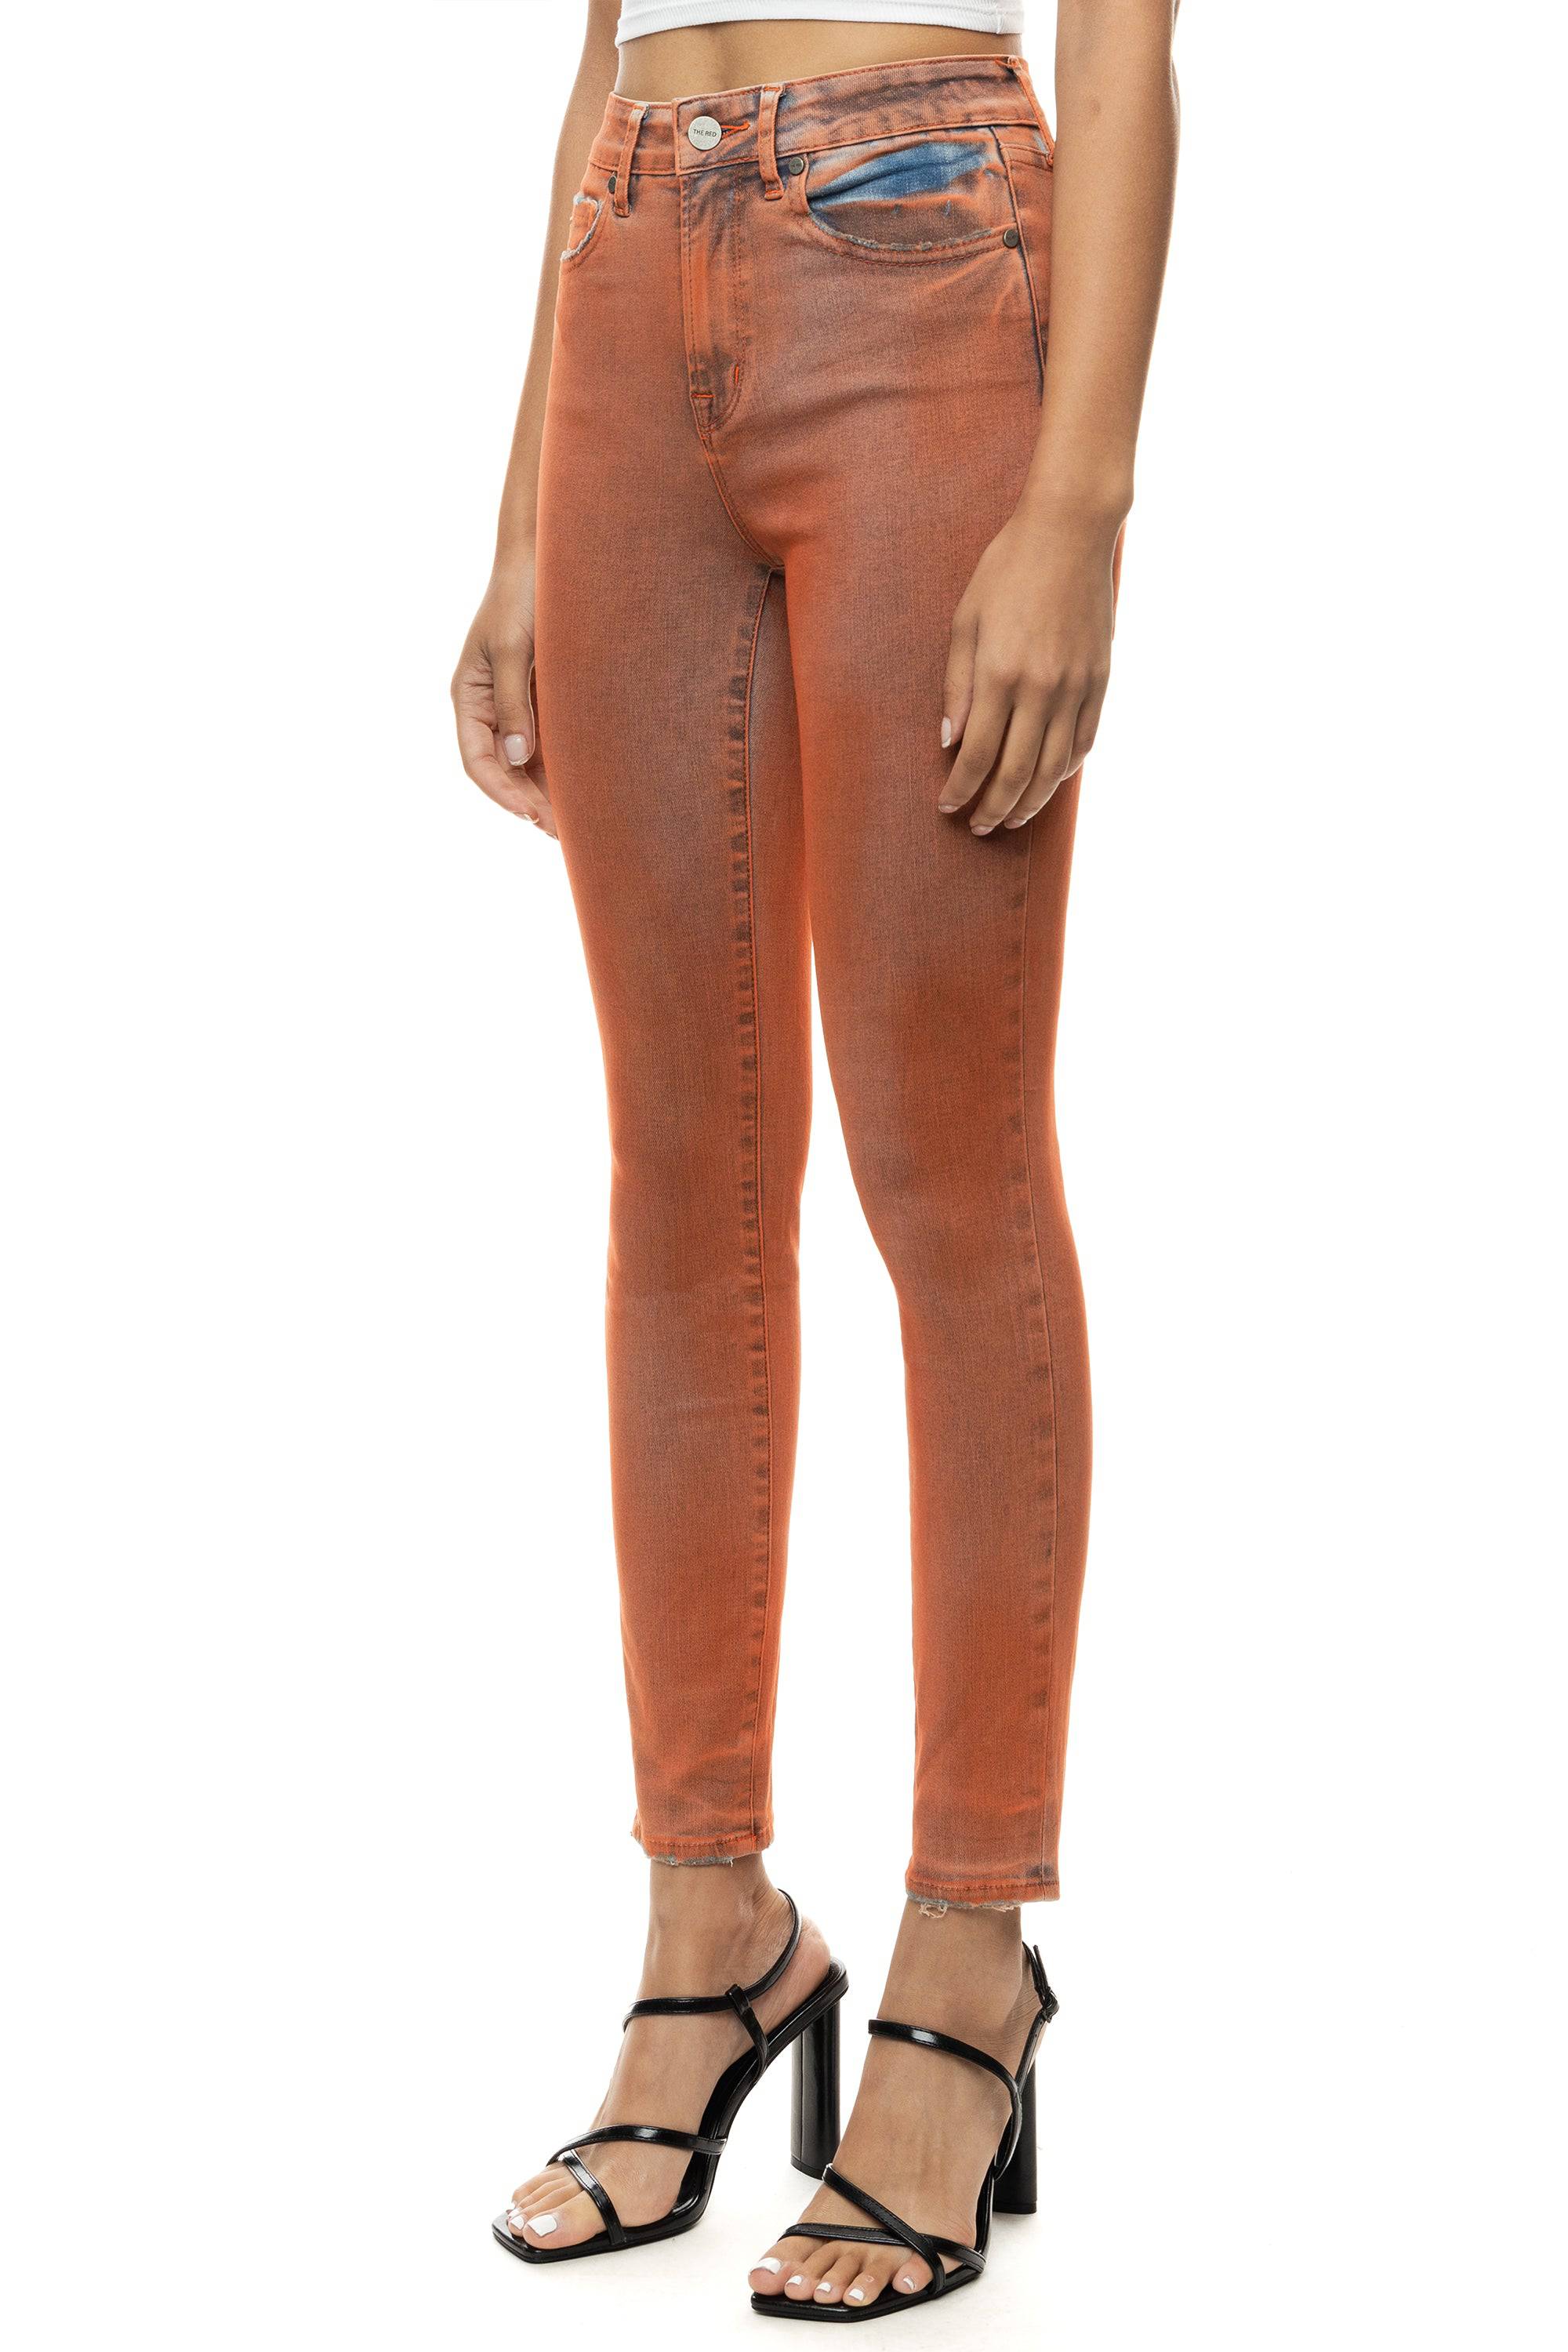 Women Time & Tru Pants Jeans Utility Slim High Rise Orange Sz 16